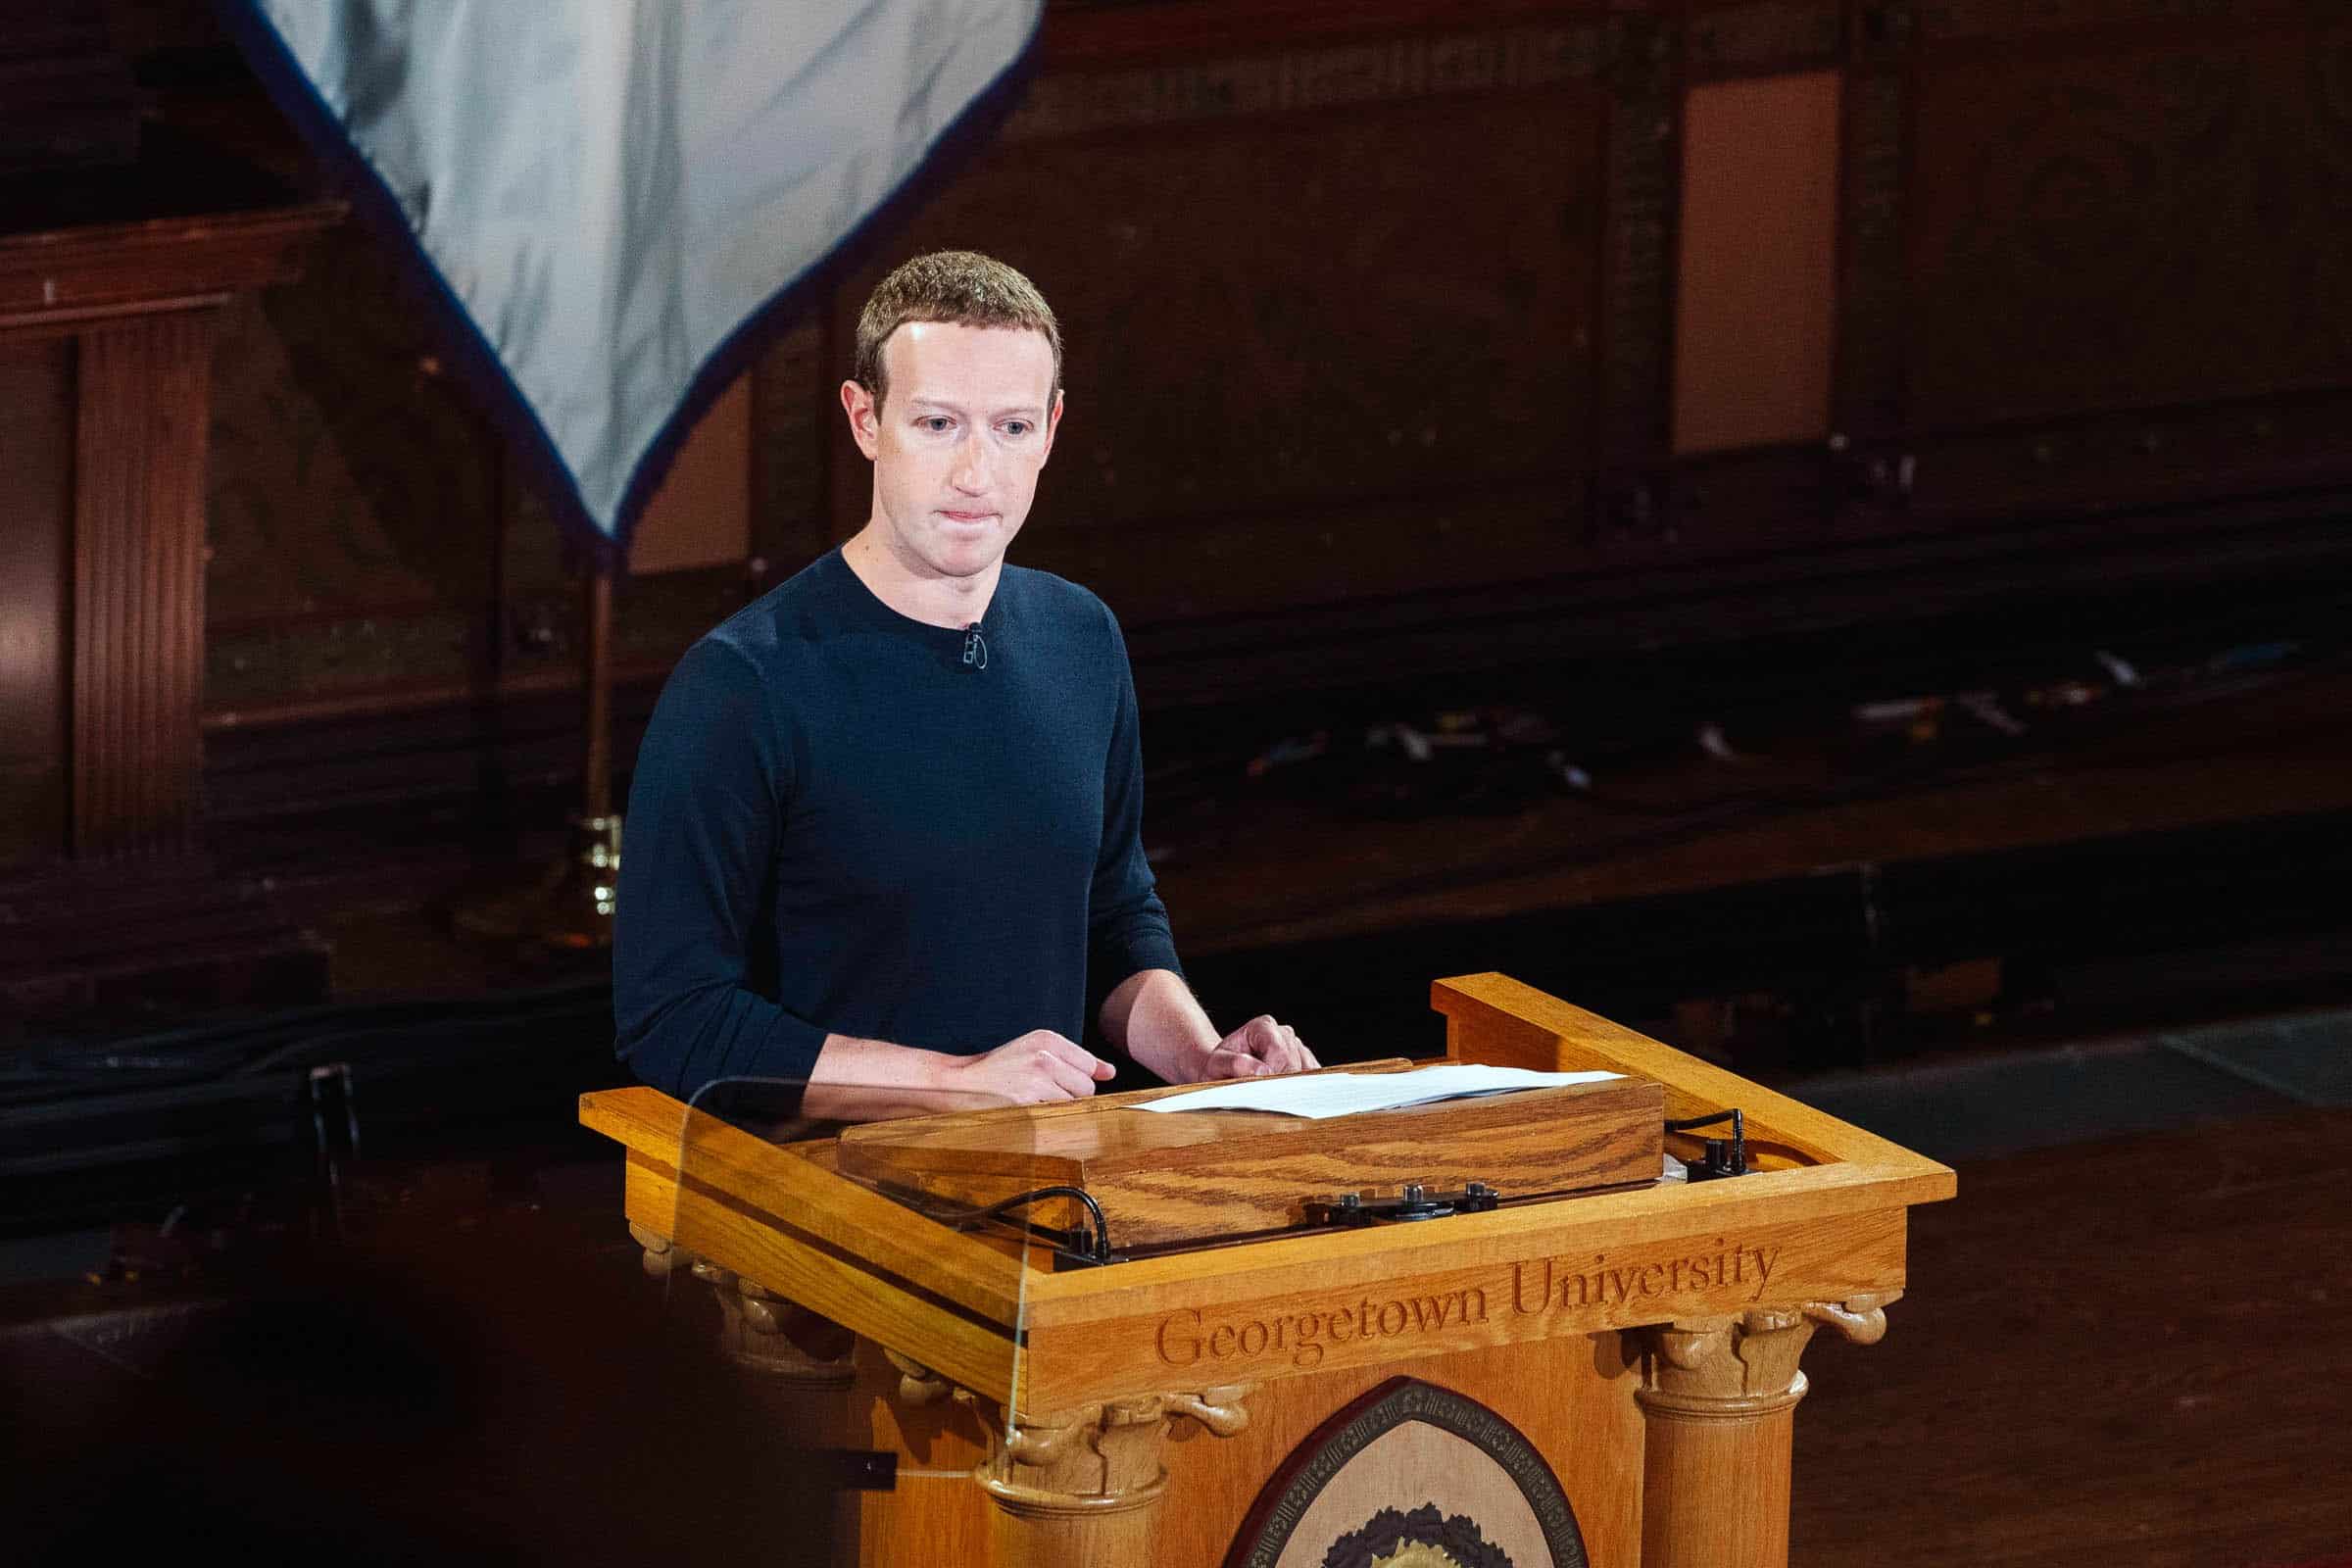 Mark Zuckerberg Yakin Libra Dapat Memperbaiki Sistem Keuangan Yang Gagal